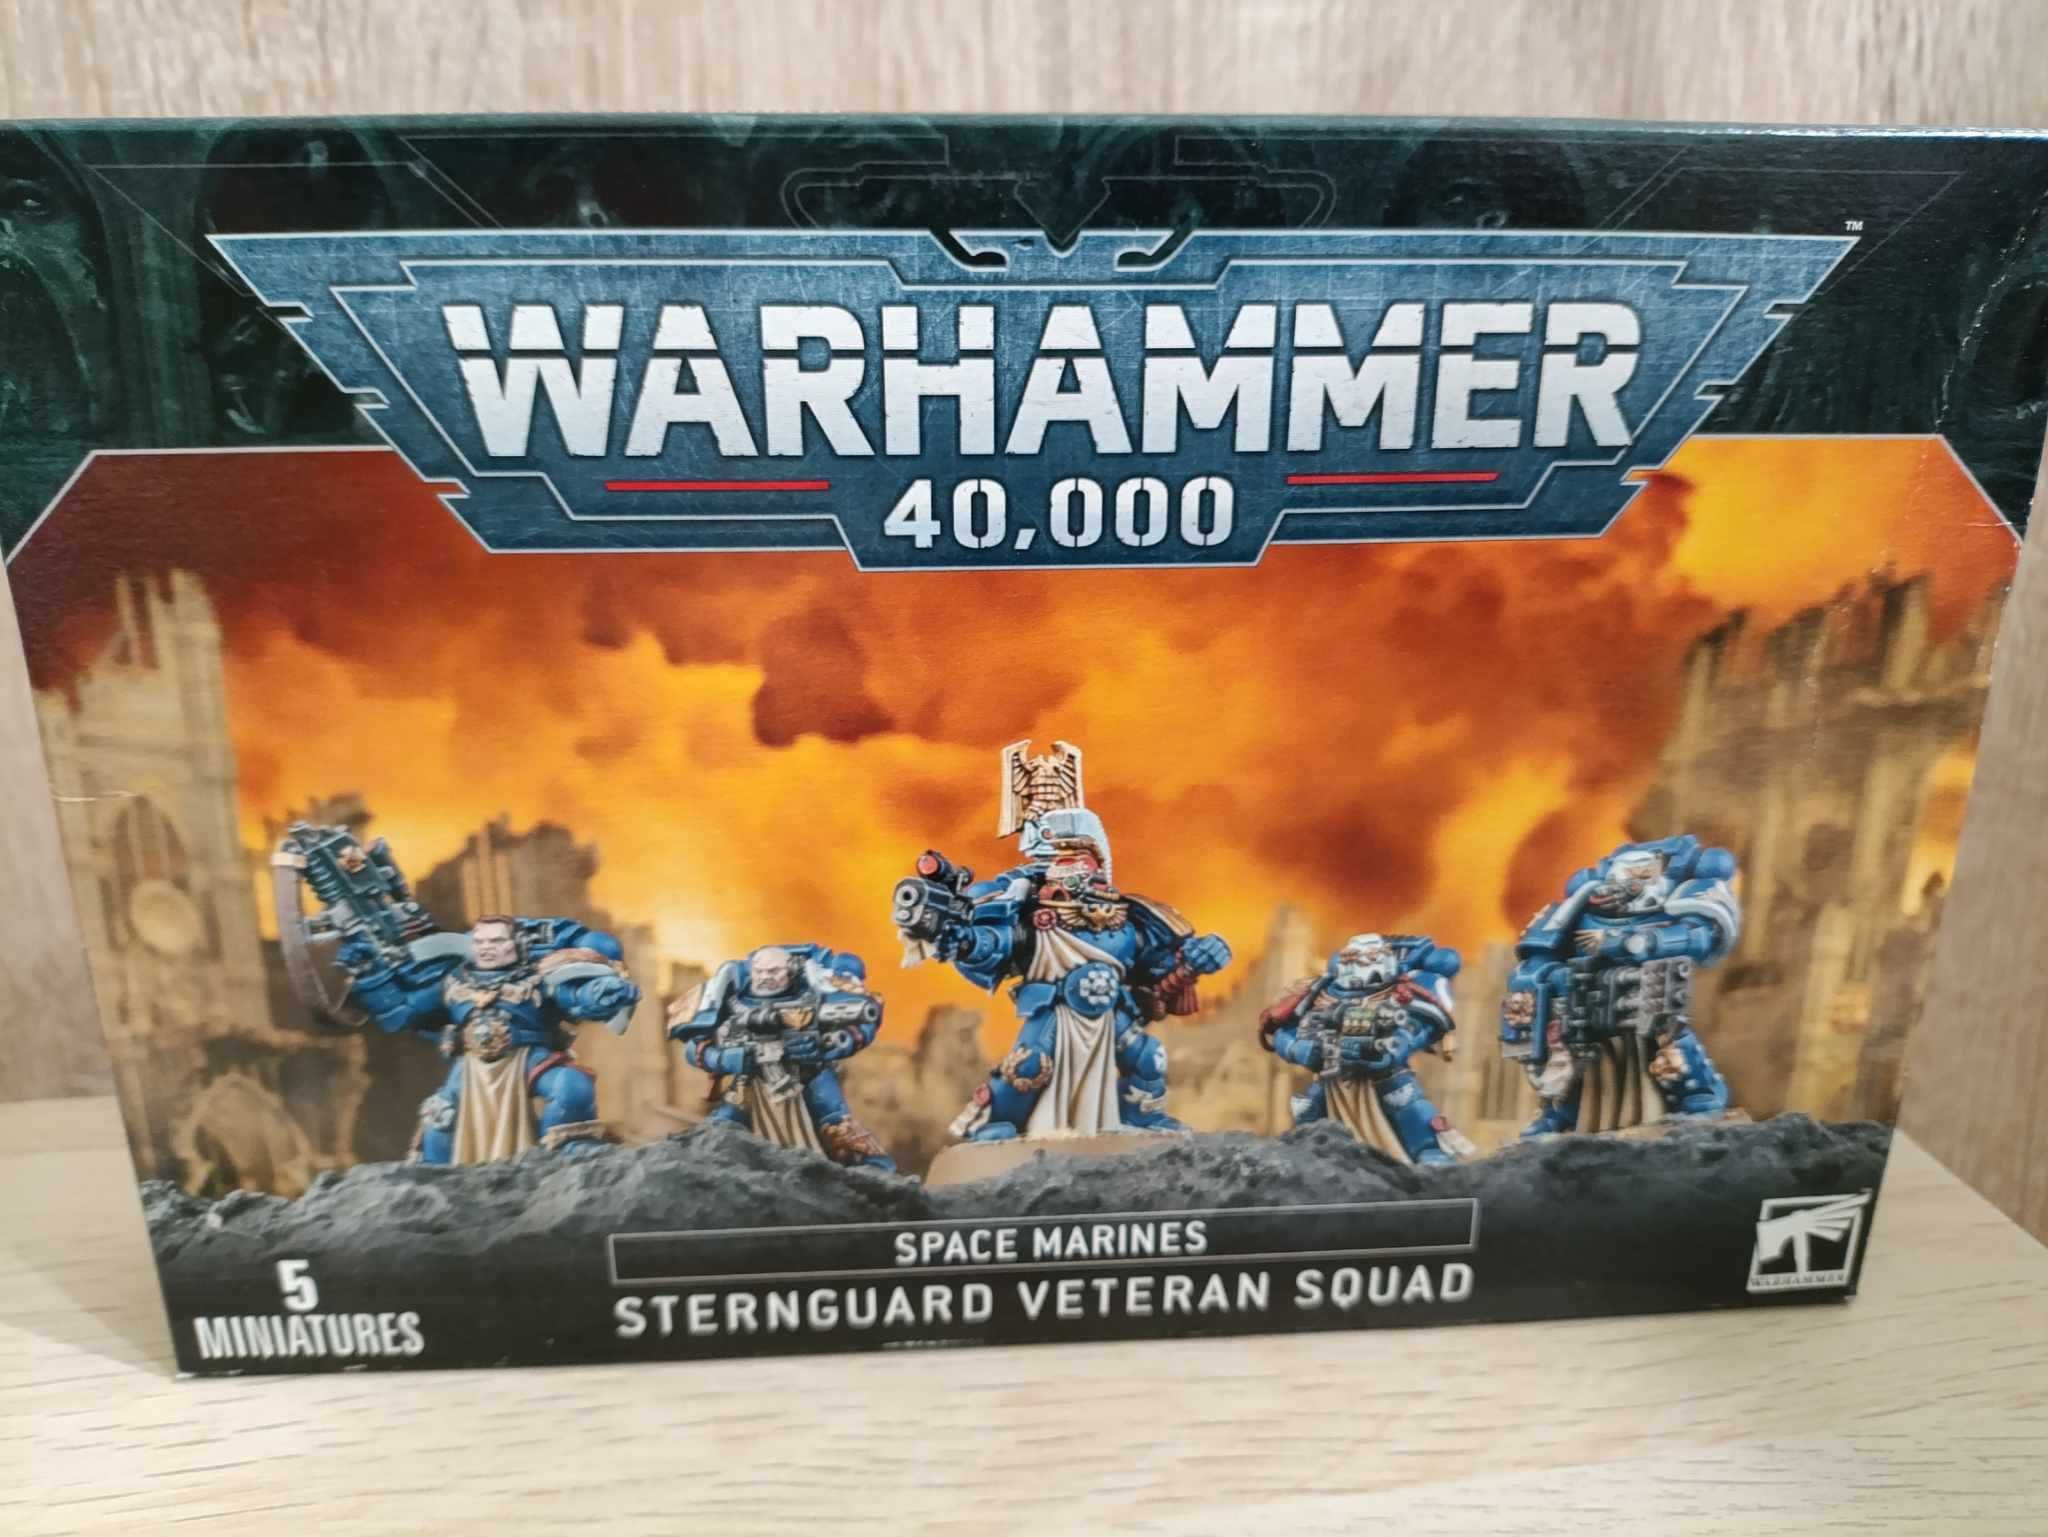 STERNGUARD VETERAN squad Warhammer 40k